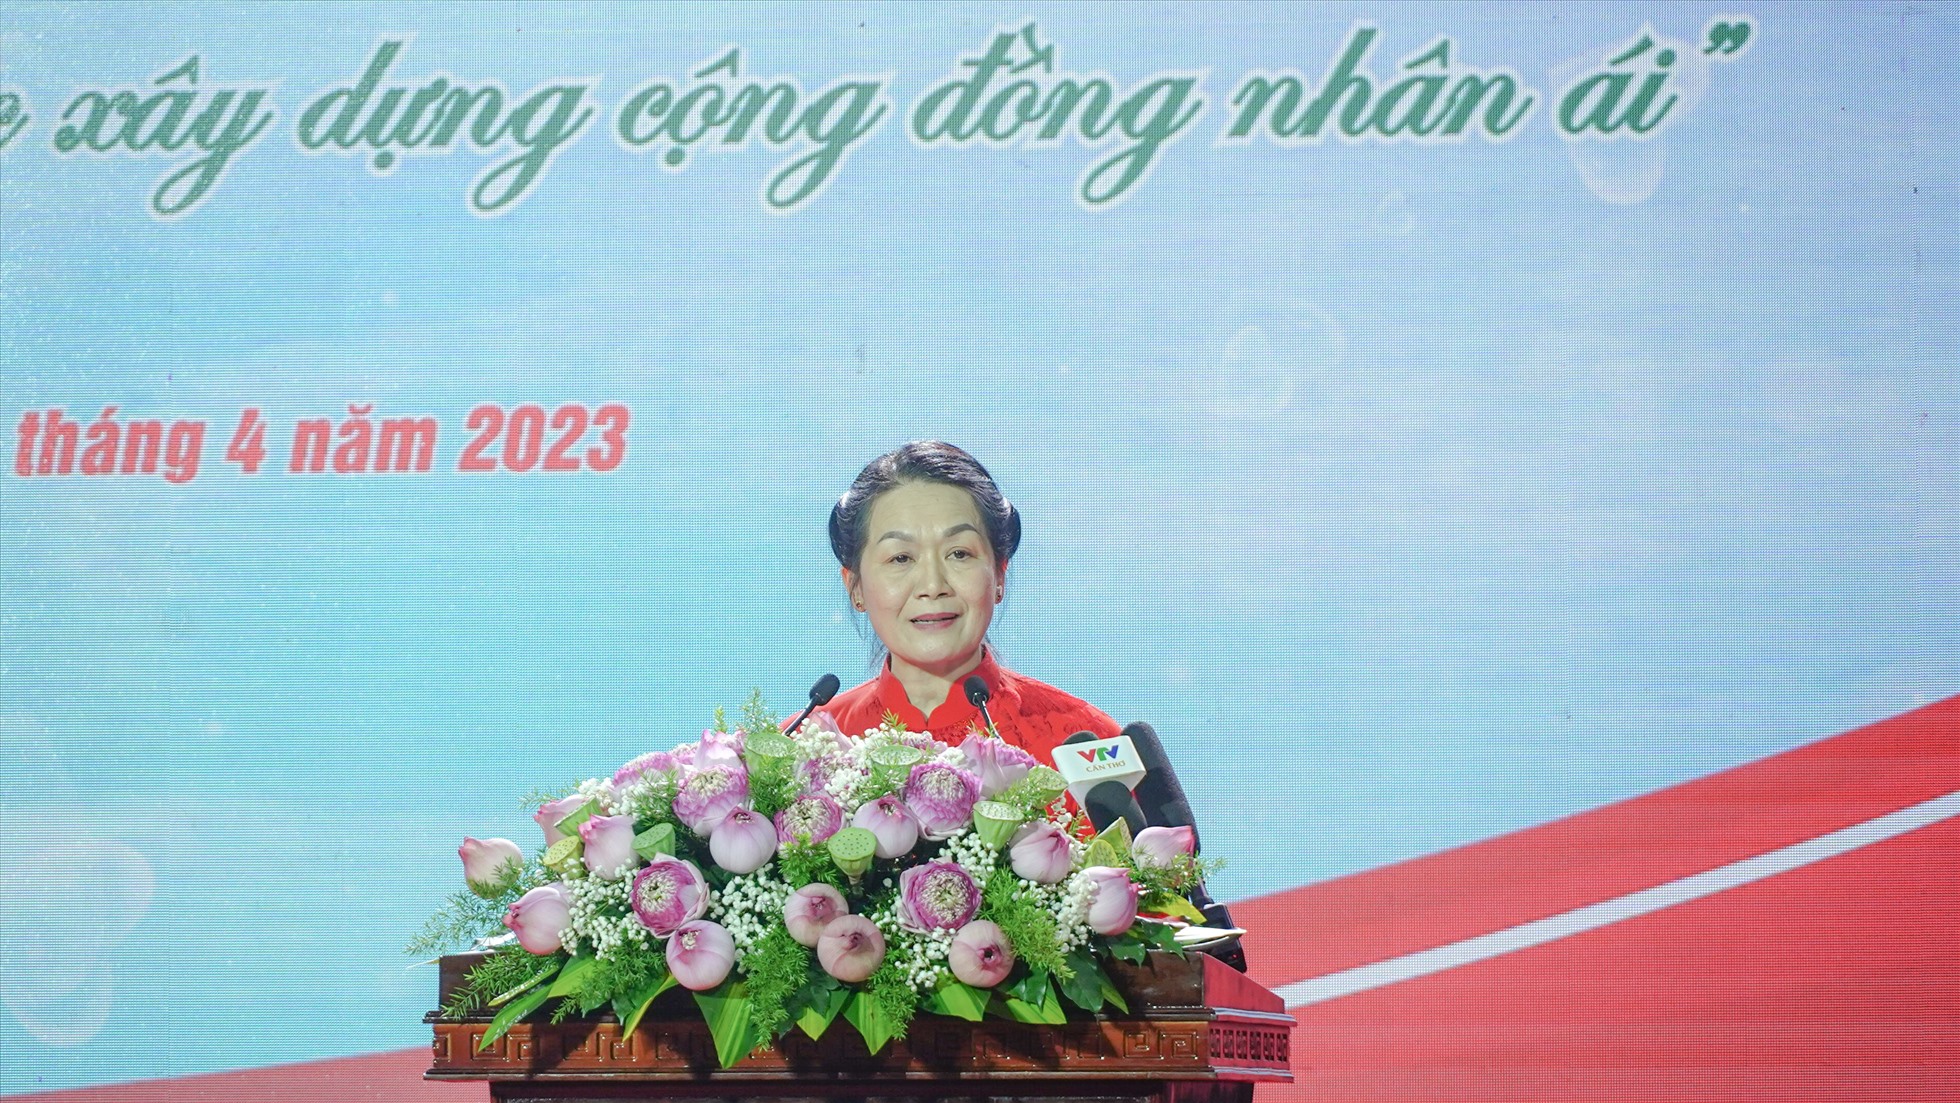 Bà Bùi Thị Hòa - Chủ tịch Hội Chữ thập đỏ Việt Nam - cho biết, Tháng nhân đạo được Hội Chữ thập đỏ Việt Nam triển khai đã 5 năm. Đặc biệt, từ năm 2021 trở lại đây, Ban Bí thư cho chủ trương lấy tháng 5 hằng năm là Tháng Nhân đạo.